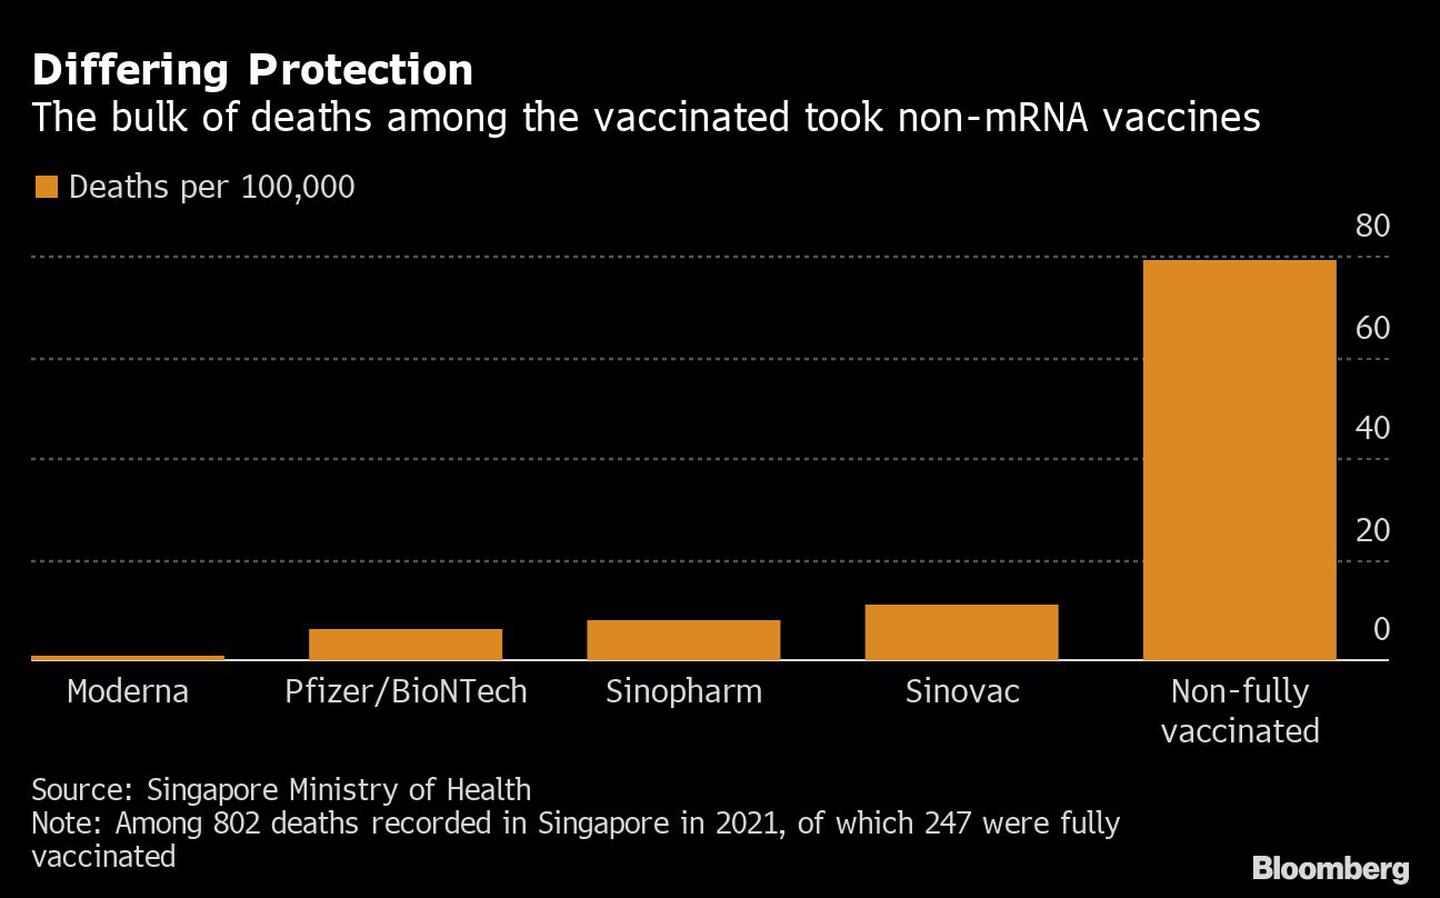 la mayor parte de las muertes entre los vacunados tomaron vacunas sin ARNmdfd